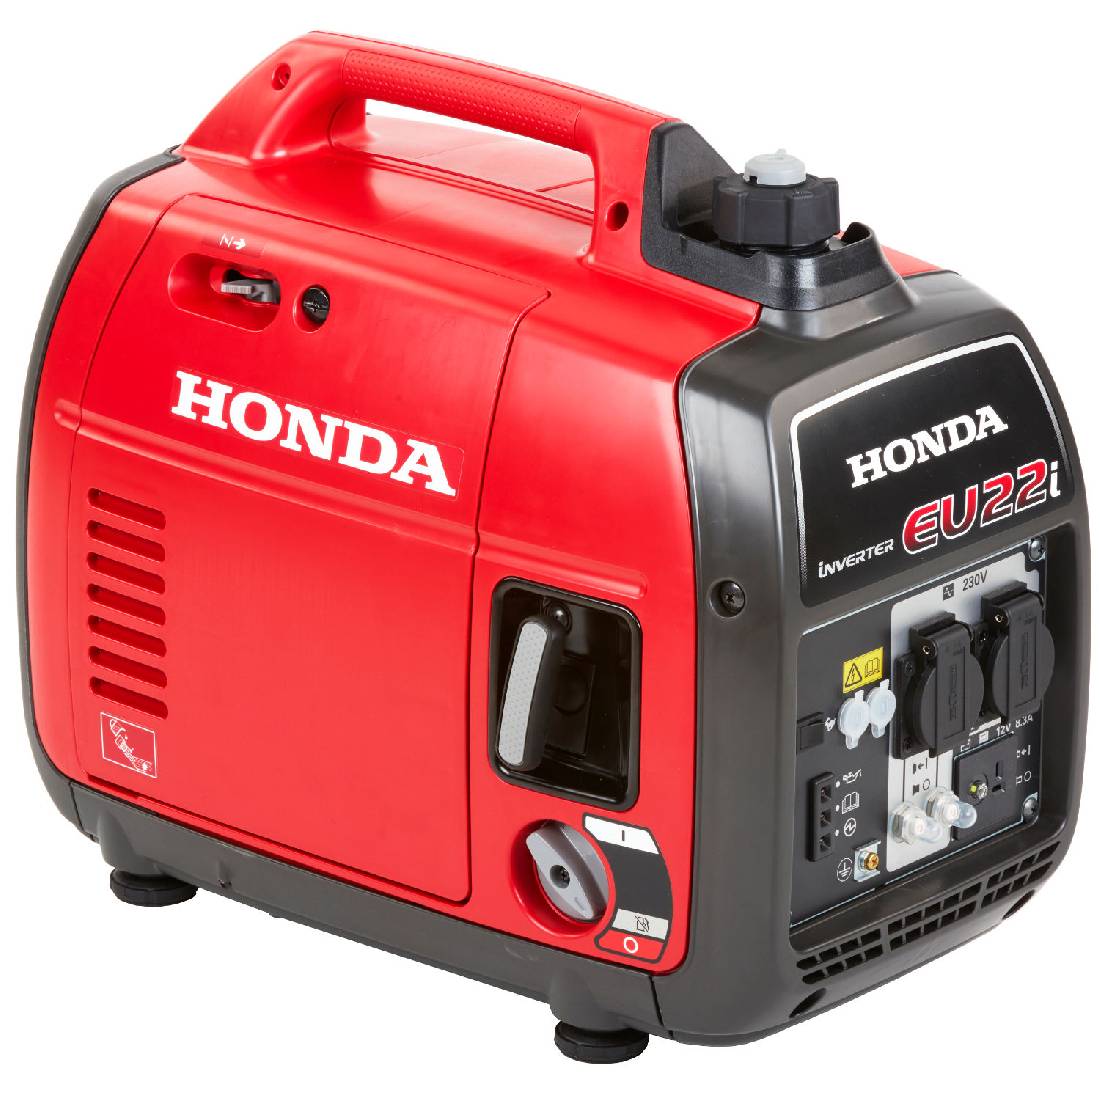  бензиновый инверторный Honda EU 22 iT для оптовых покупателей .